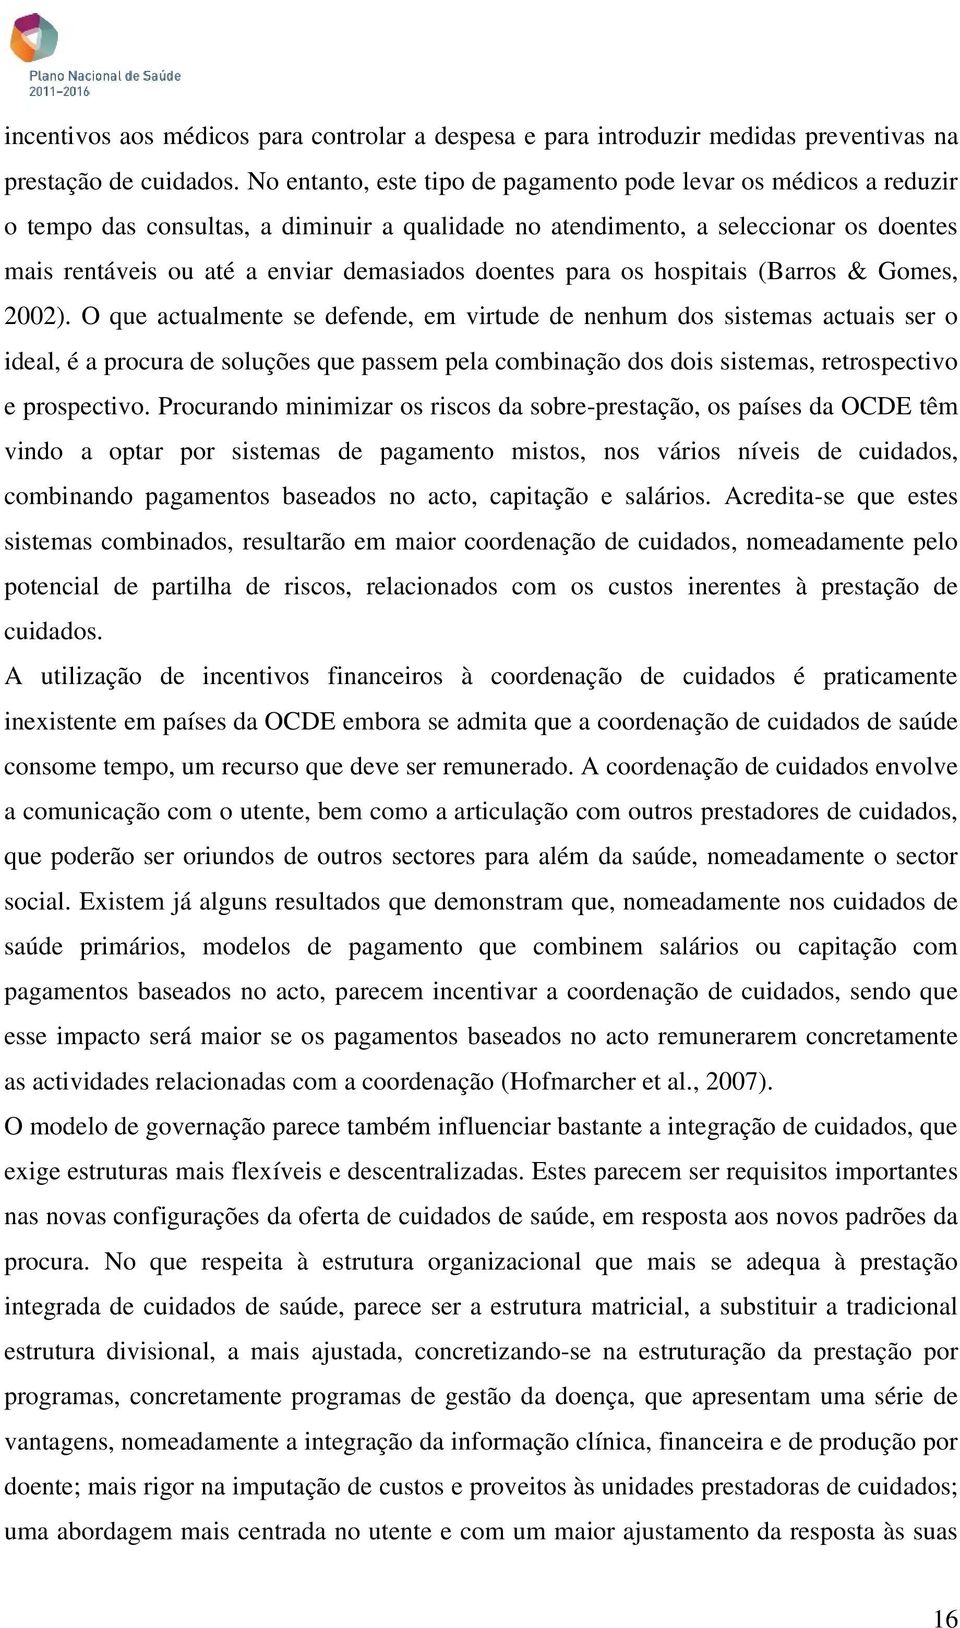 doentes para os hospitais (Barros & Gomes, 2002).